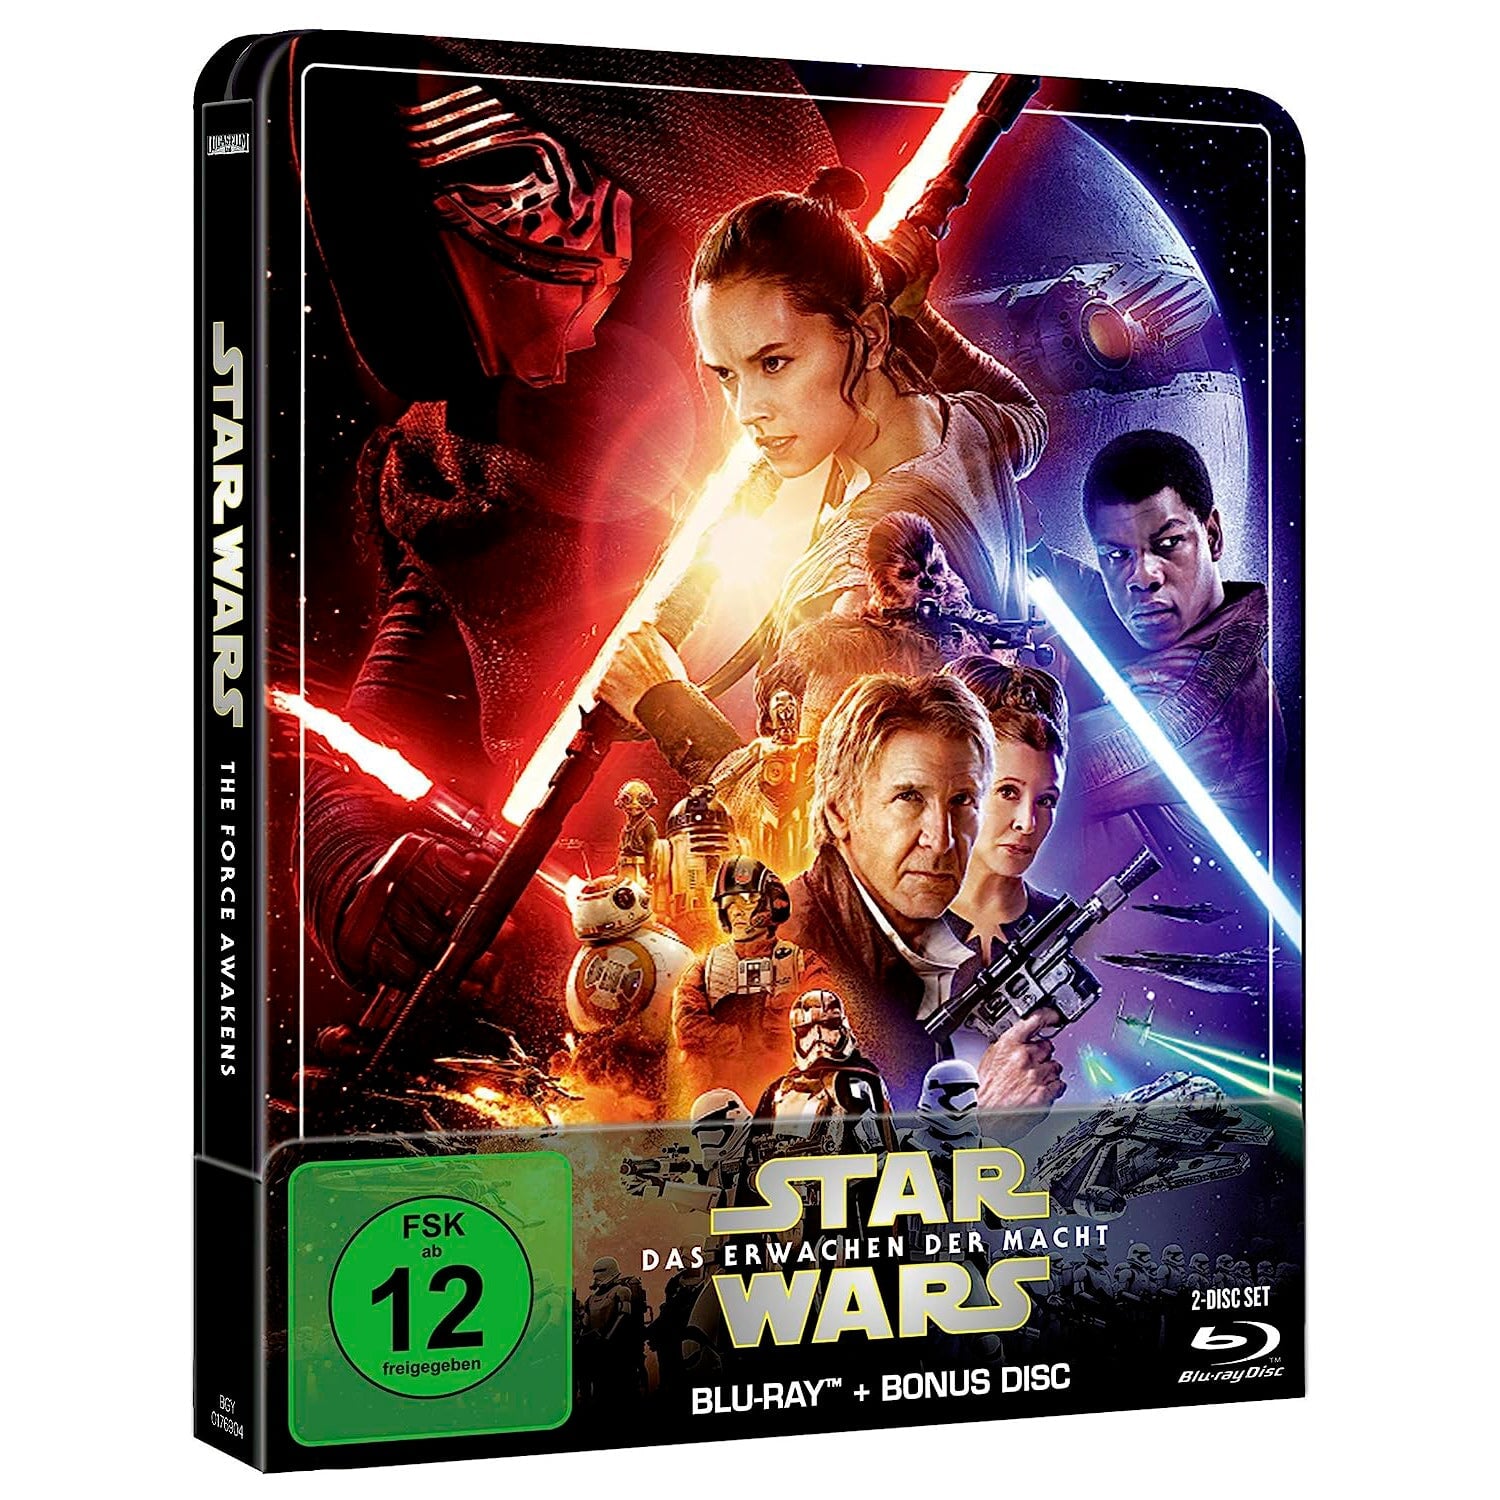 Звёздные войны: Эпизод VII – Пробуждение силы (англ. язык) (Blu-ray + Бонусный диск) Steelbook